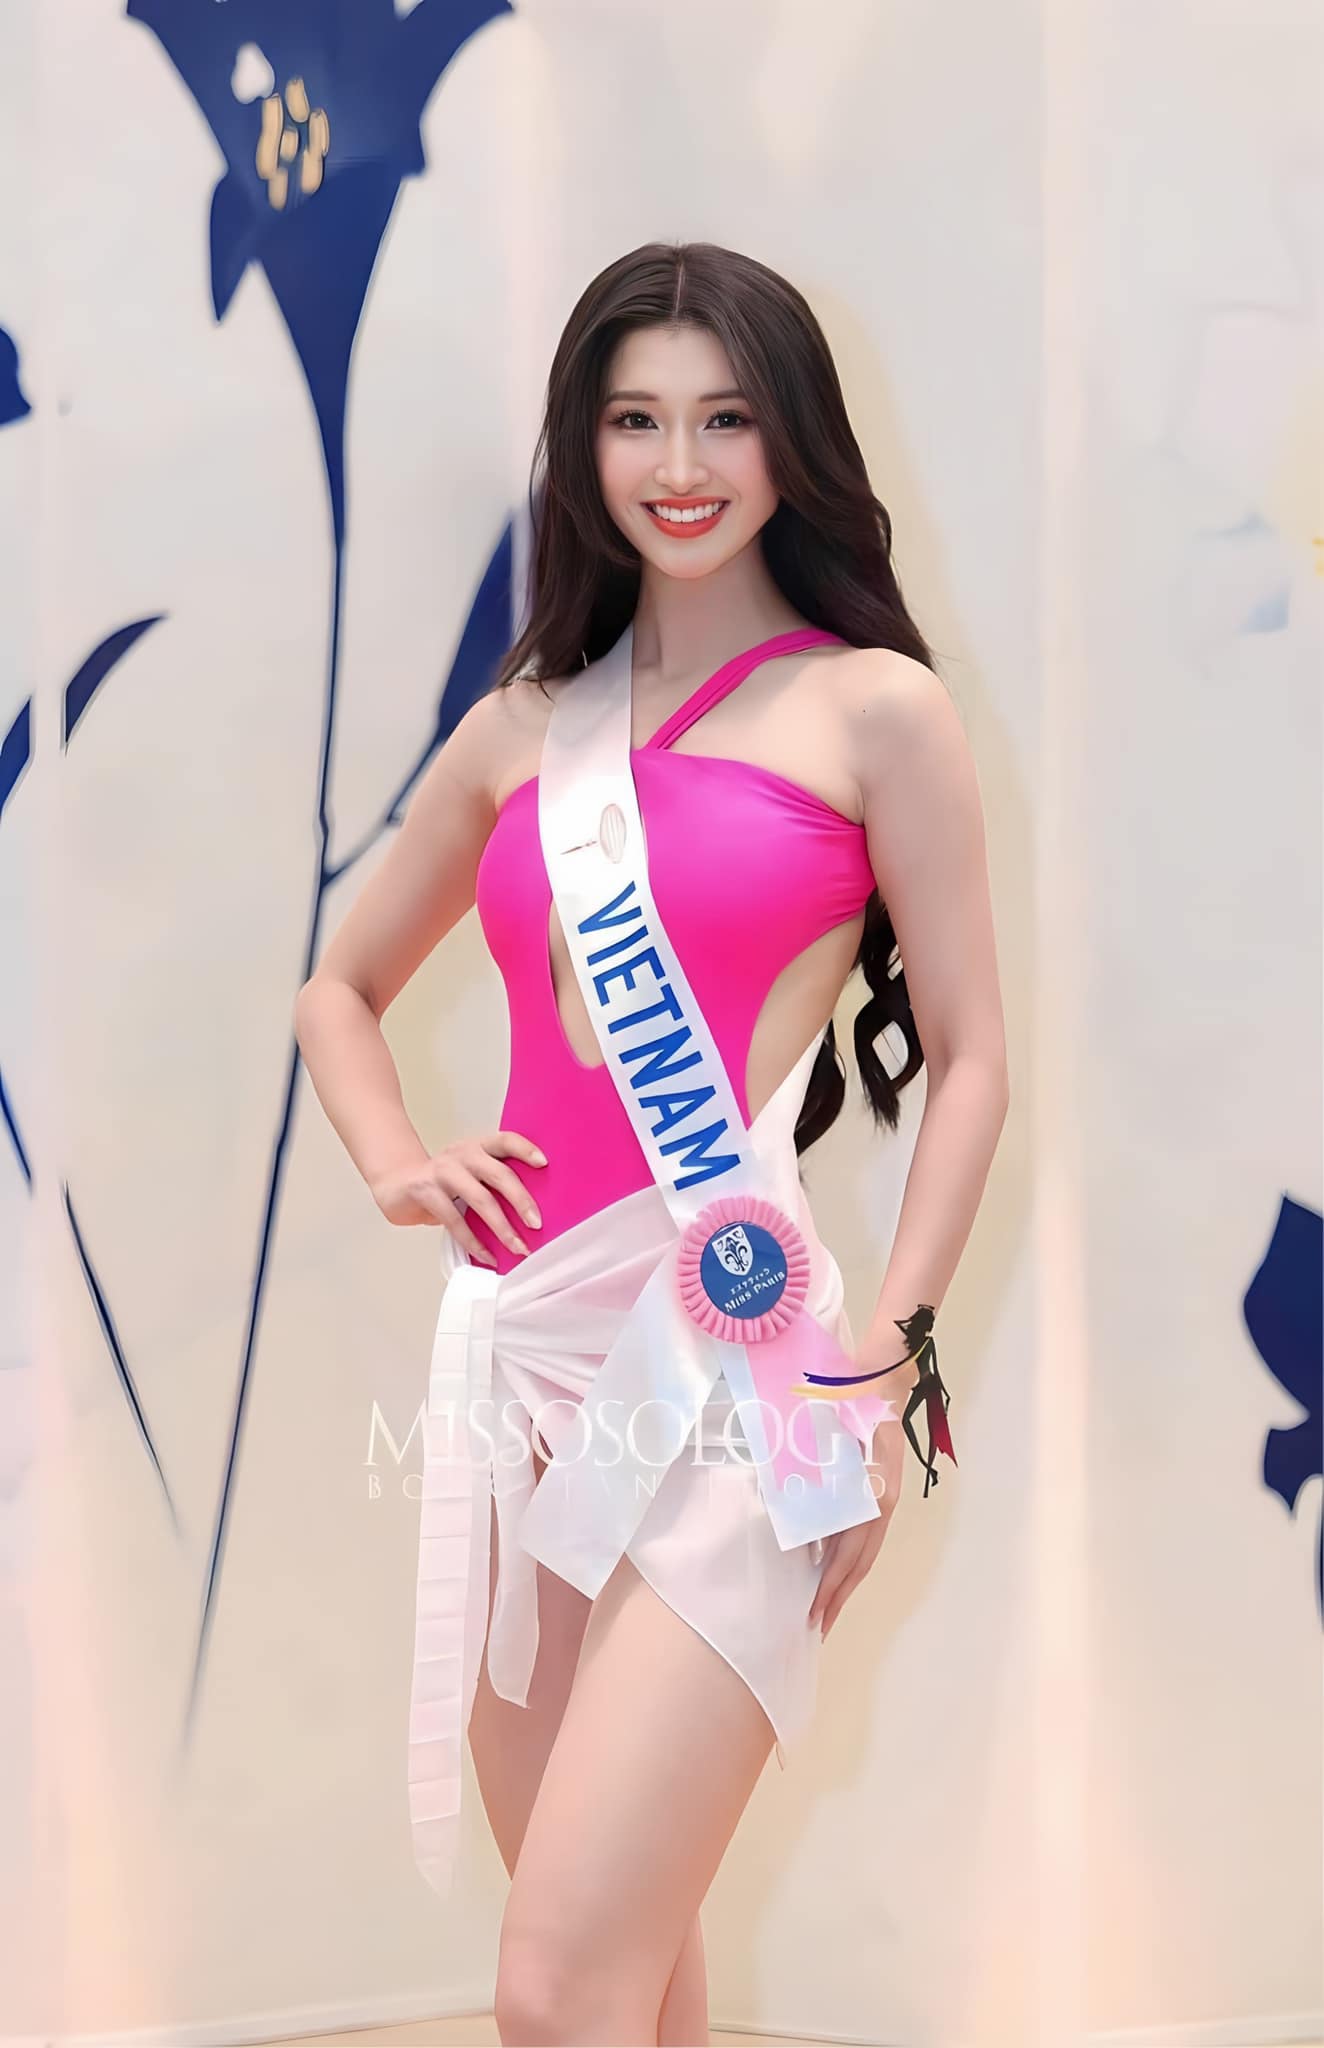 Phương Nhi được dự đoán lọt Top 15 Hoa hậu Quốc tế 2023, xem đại diện Việt Nam thi chung kết ở đâu? - ảnh 5